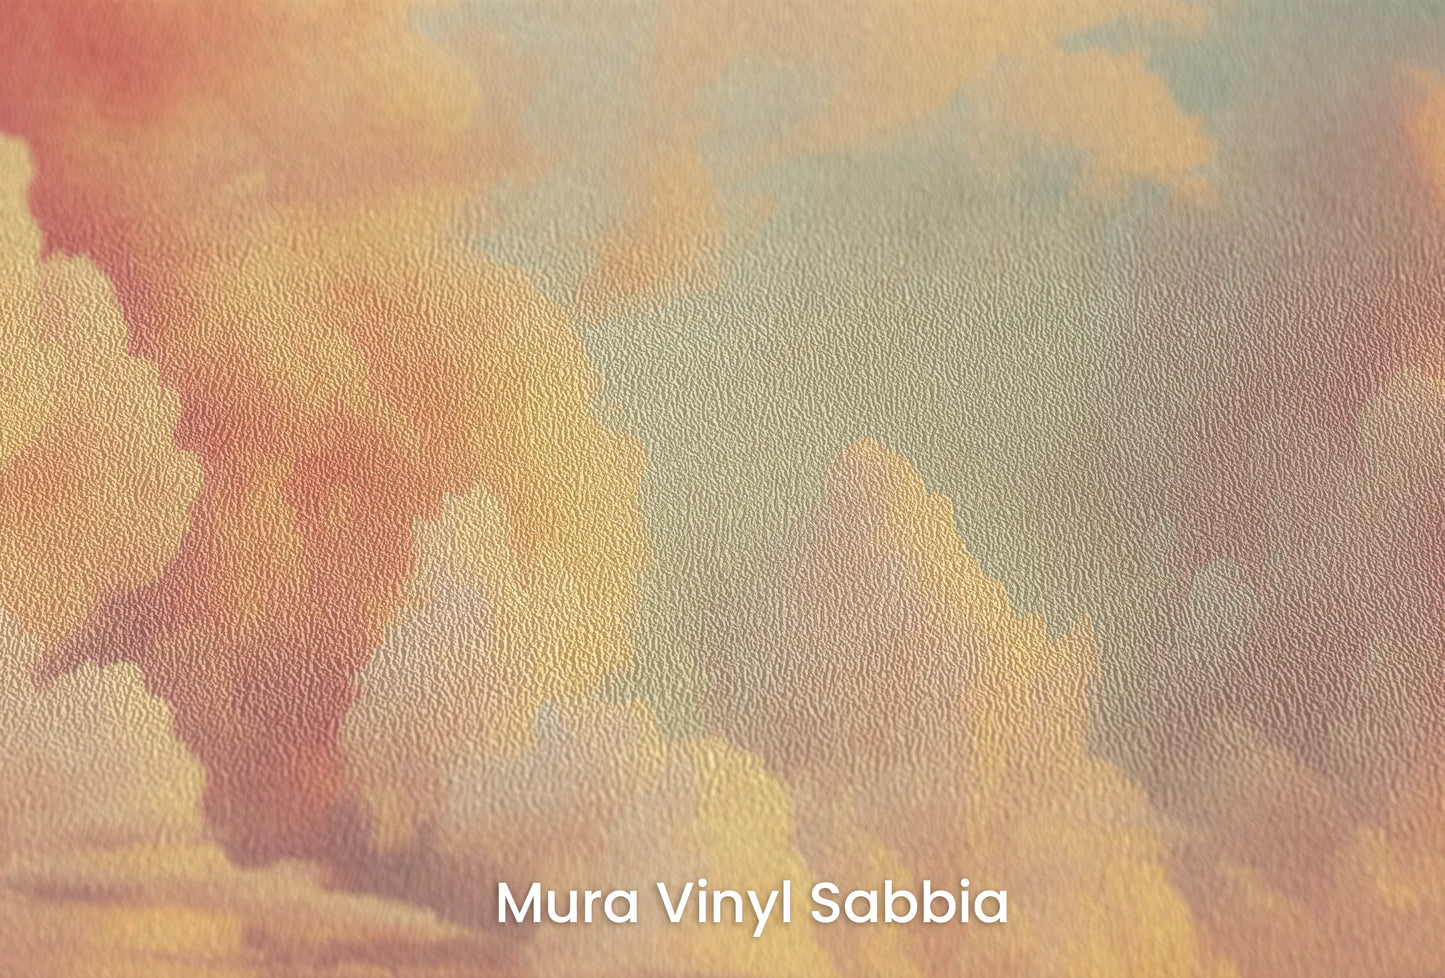 Zbliżenie na artystyczną fototapetę o nazwie Cotton Clouds na podłożu Mura Vinyl Sabbia struktura grubego ziarna piasku.